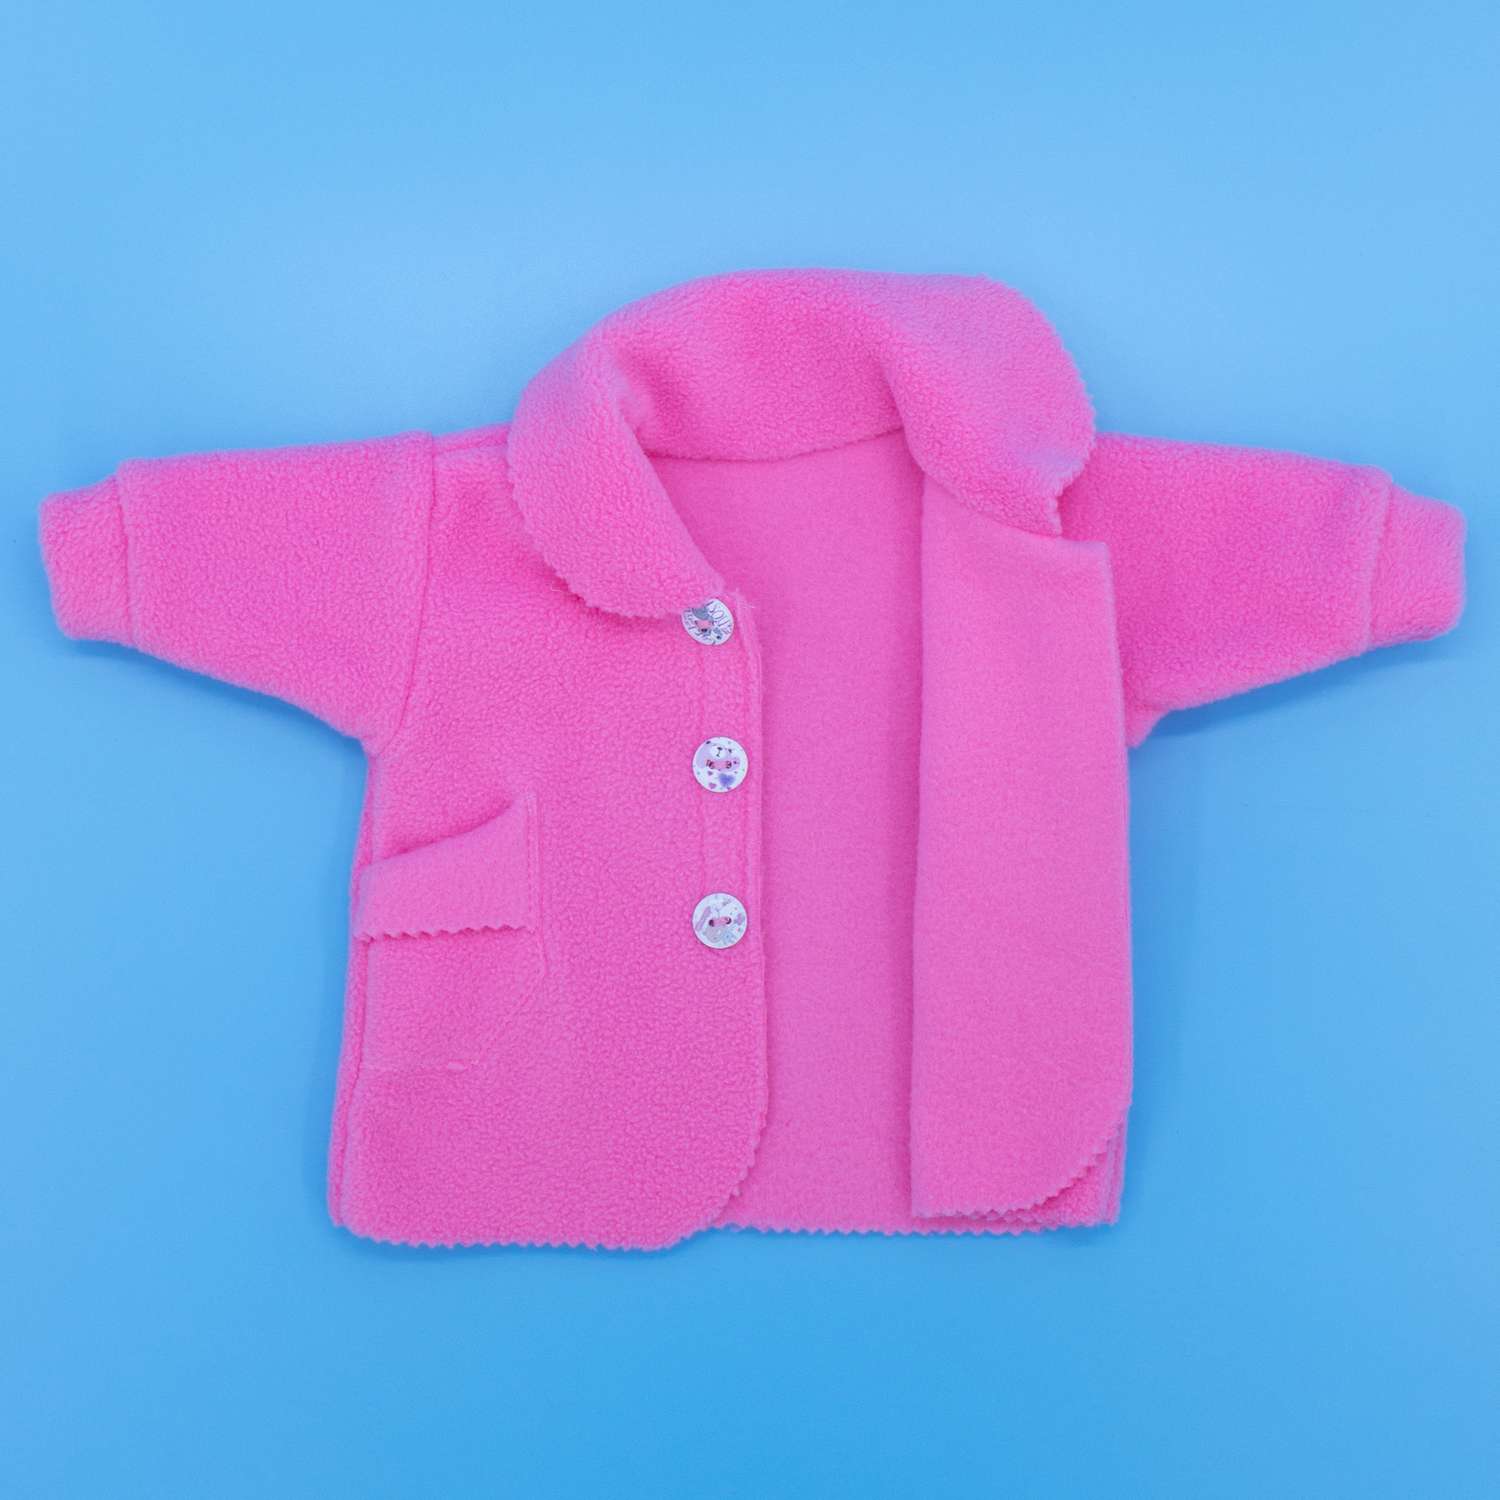 Комплект одежды Модница Пальто с беретом для пупса 43-48 см 6119 розовый 6119розовый - фото 11